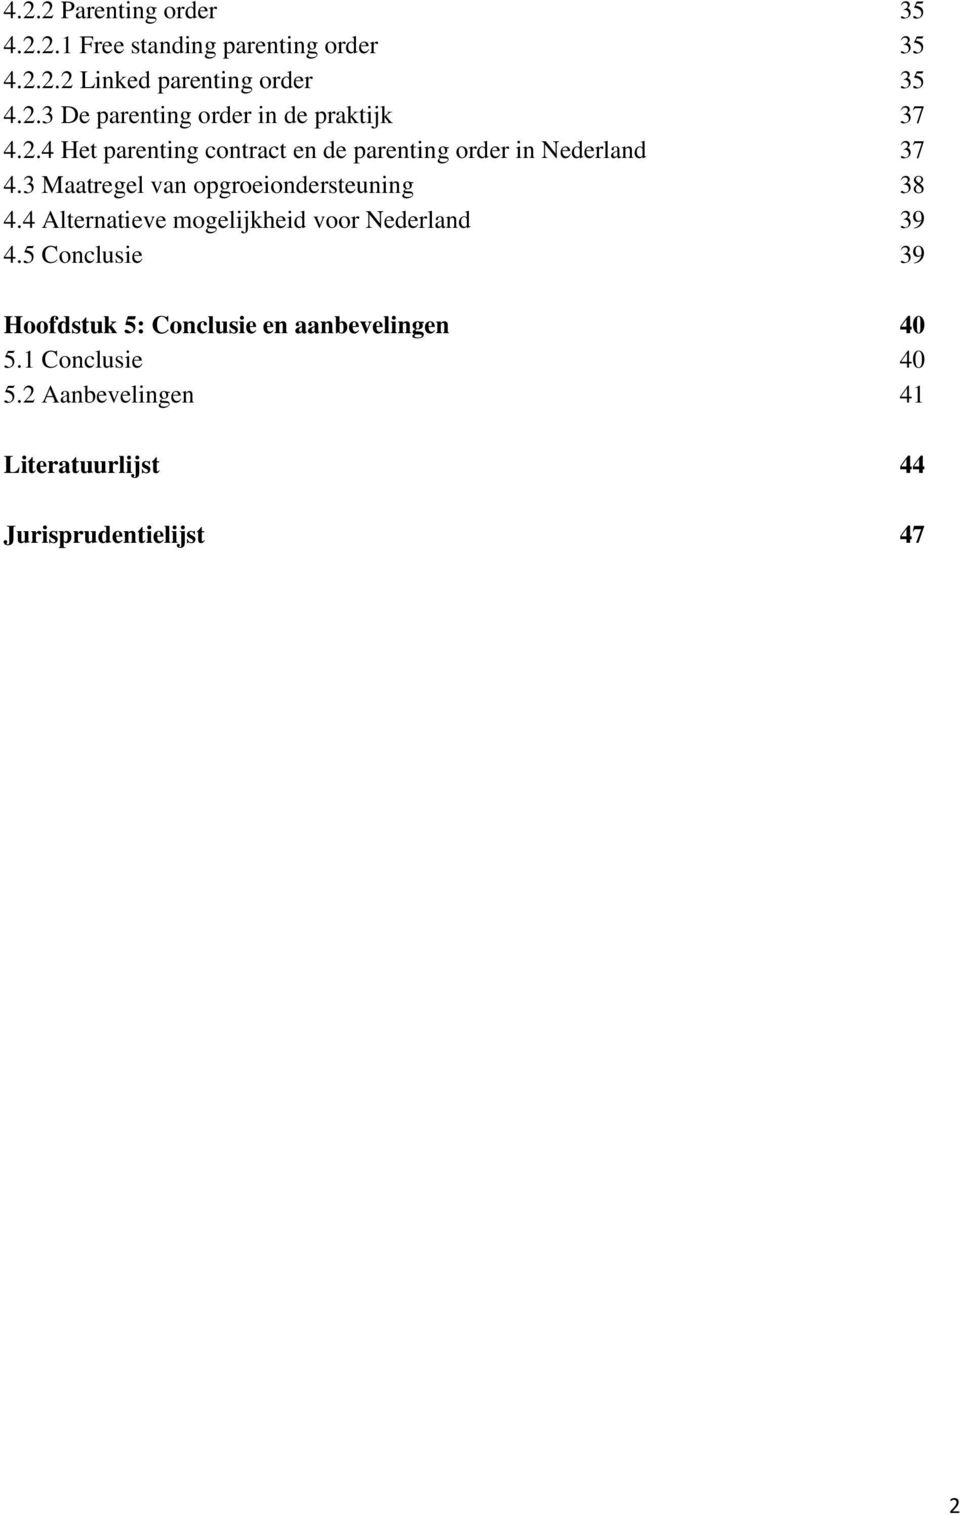 4 Alternatieve mogelijkheid voor Nederland 39 4.5 Conclusie 39 Hoofdstuk 5: Conclusie en aanbevelingen 40 5.